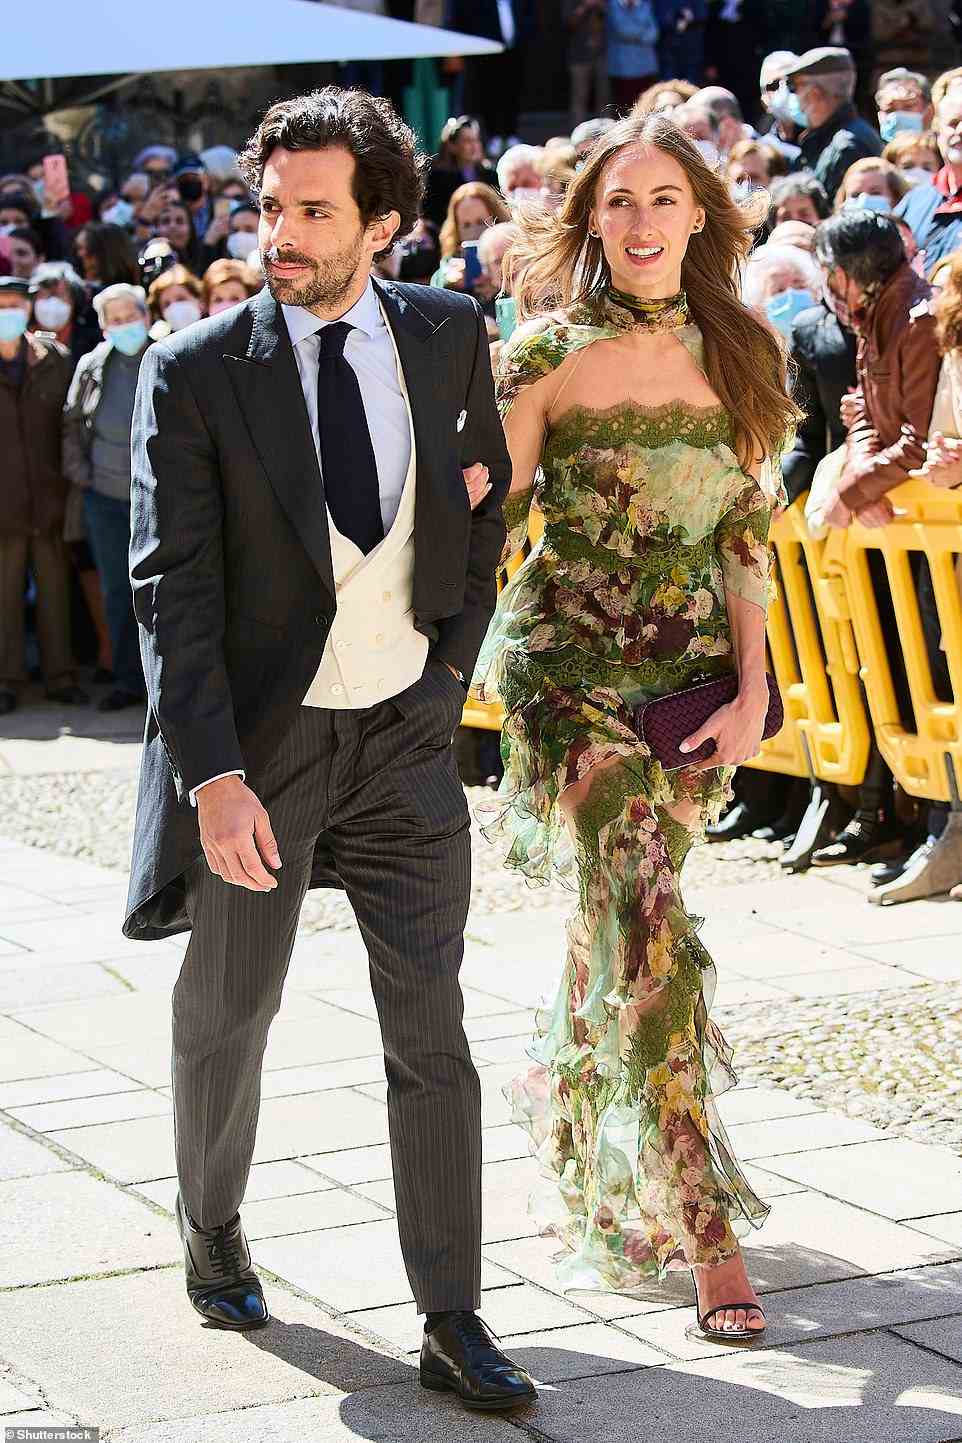 Alonso Aznar und seine Freundin Renata Collado gehörten zu den gut gekleideten Gästen der Hochzeit